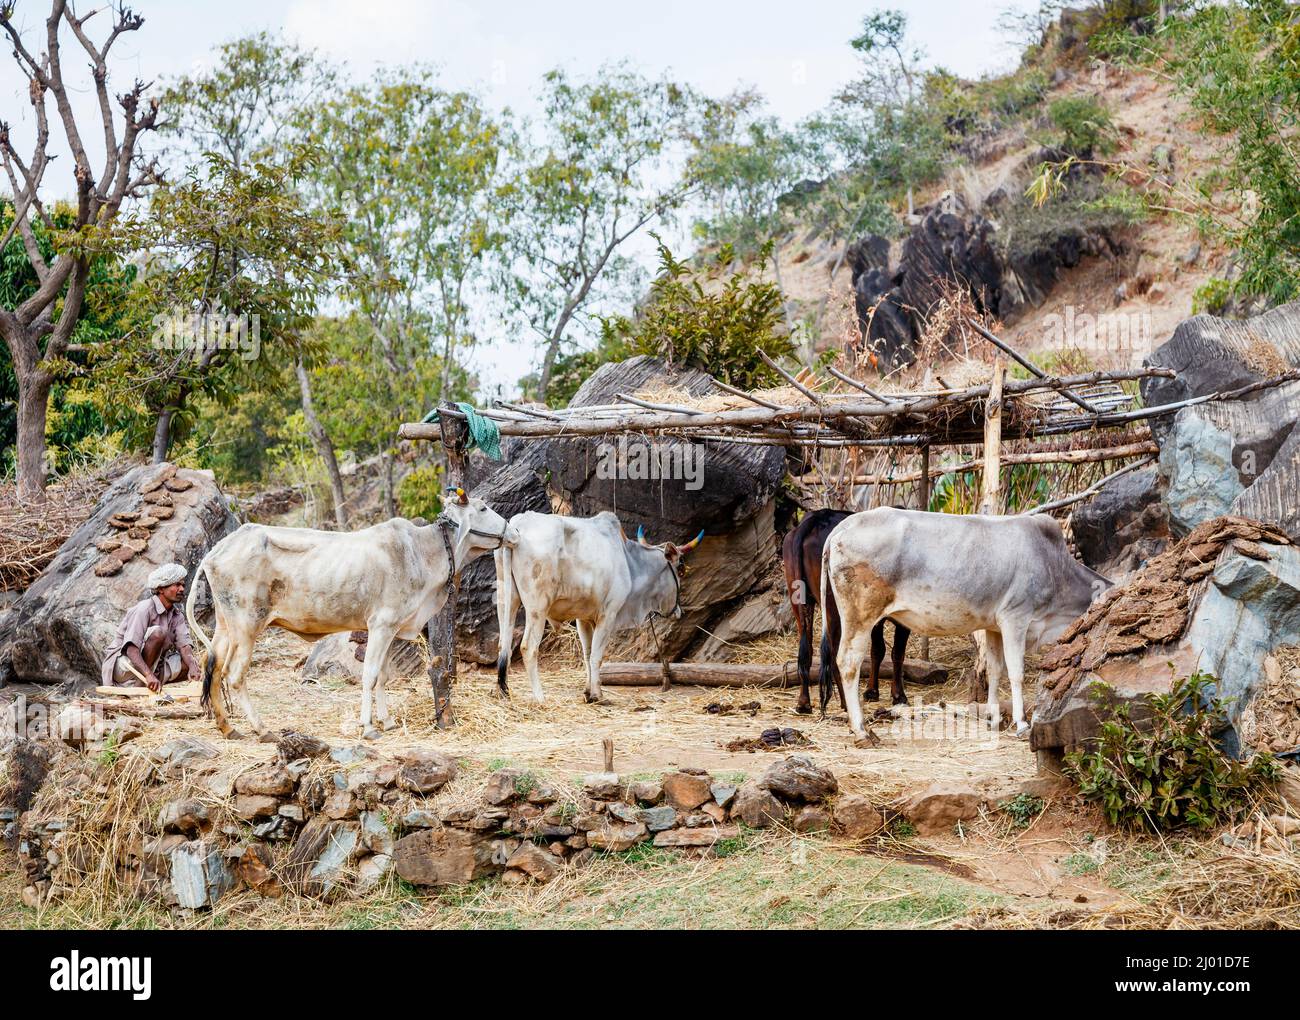 Vaches indiennes blanches dans une écurie ou un abri fragile près du fort de Kumbhalgarh dans les collines d'Aravalli, district de Rajsamand près d'Udaipur, Rajasthan, ouest de l'Inde Banque D'Images